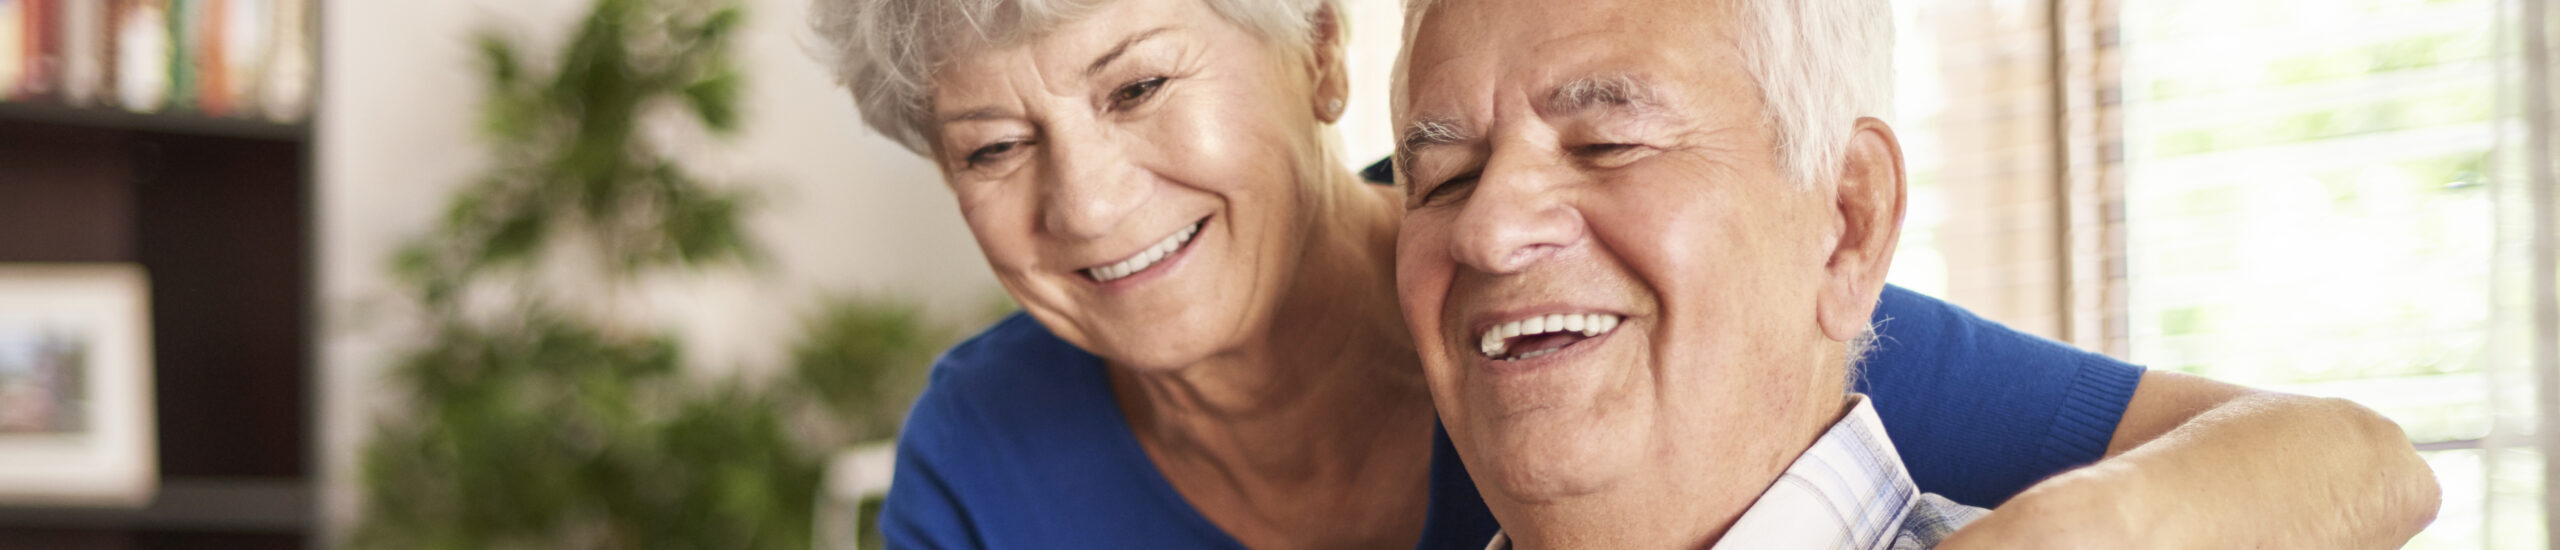 Dos adultos mayores sonrientes y abrazándose y en el hogar